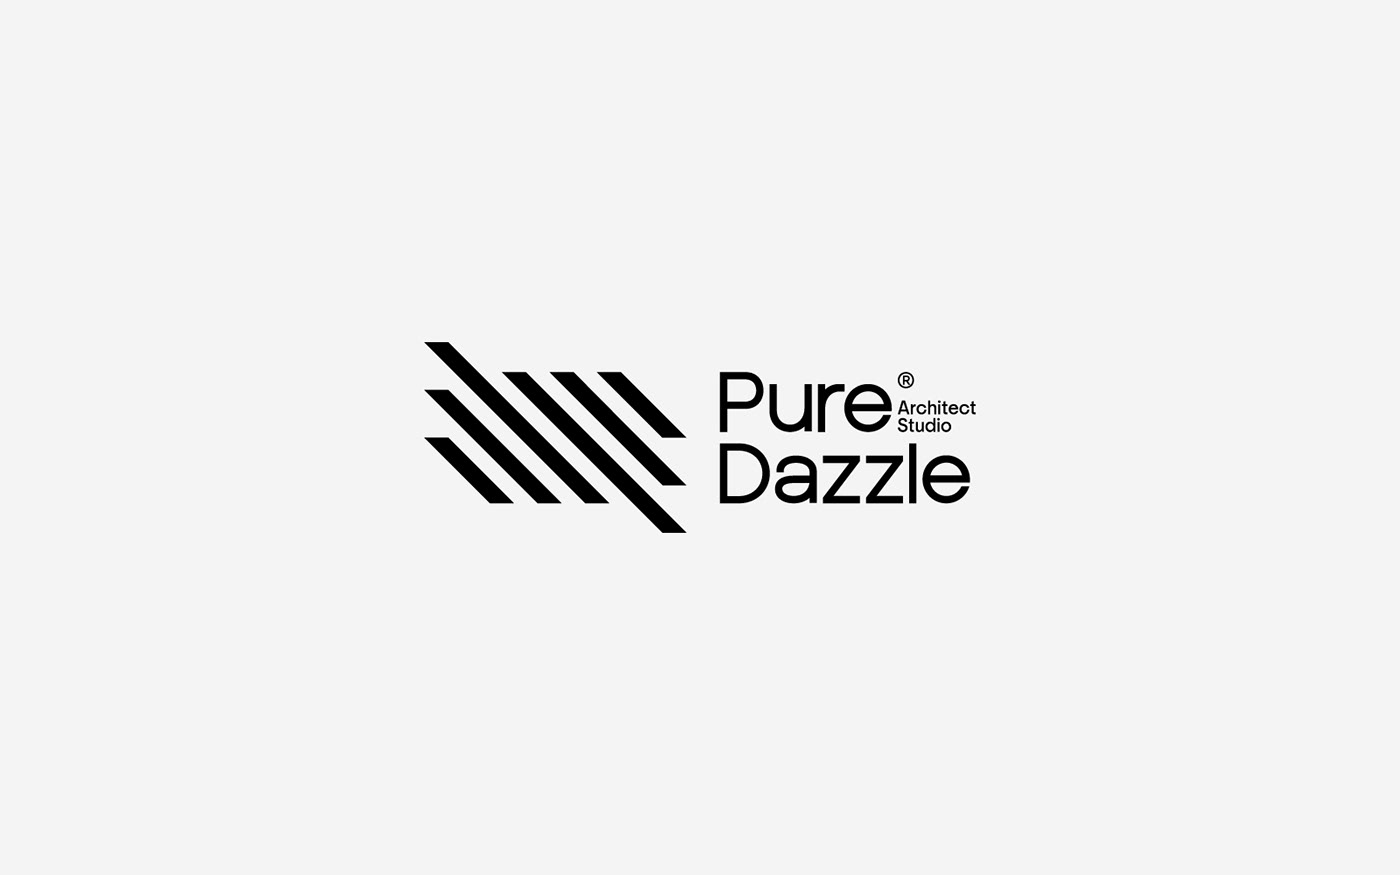 Pure Dazzle®  Architect studio | Architecture Branding